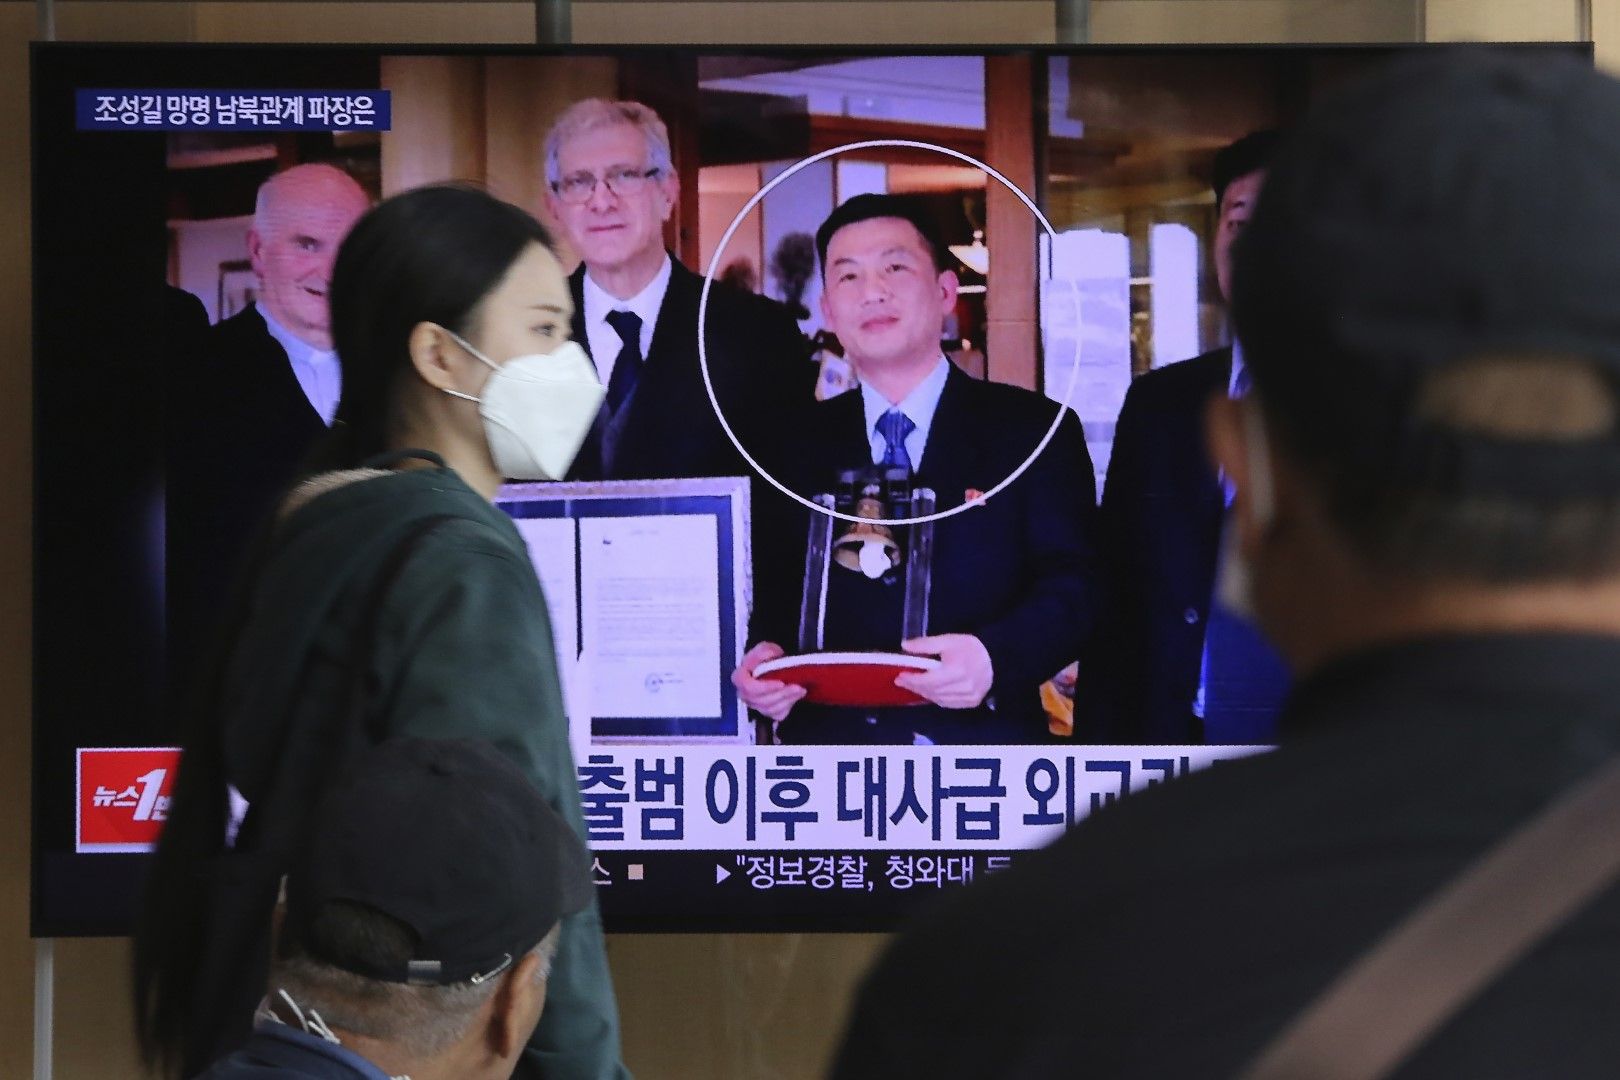 Джо Сон-гил (ограденият в кръг) е на телевизионния екран по време на новинарска програма, излъчвана на жп гара Сеул в Сеул, Южна Корея, сряда, 7 октомври 2020 г. Джо изчезна в Италия в края на 2018 г., а в момента живее в Южна Корея под закрила на правите